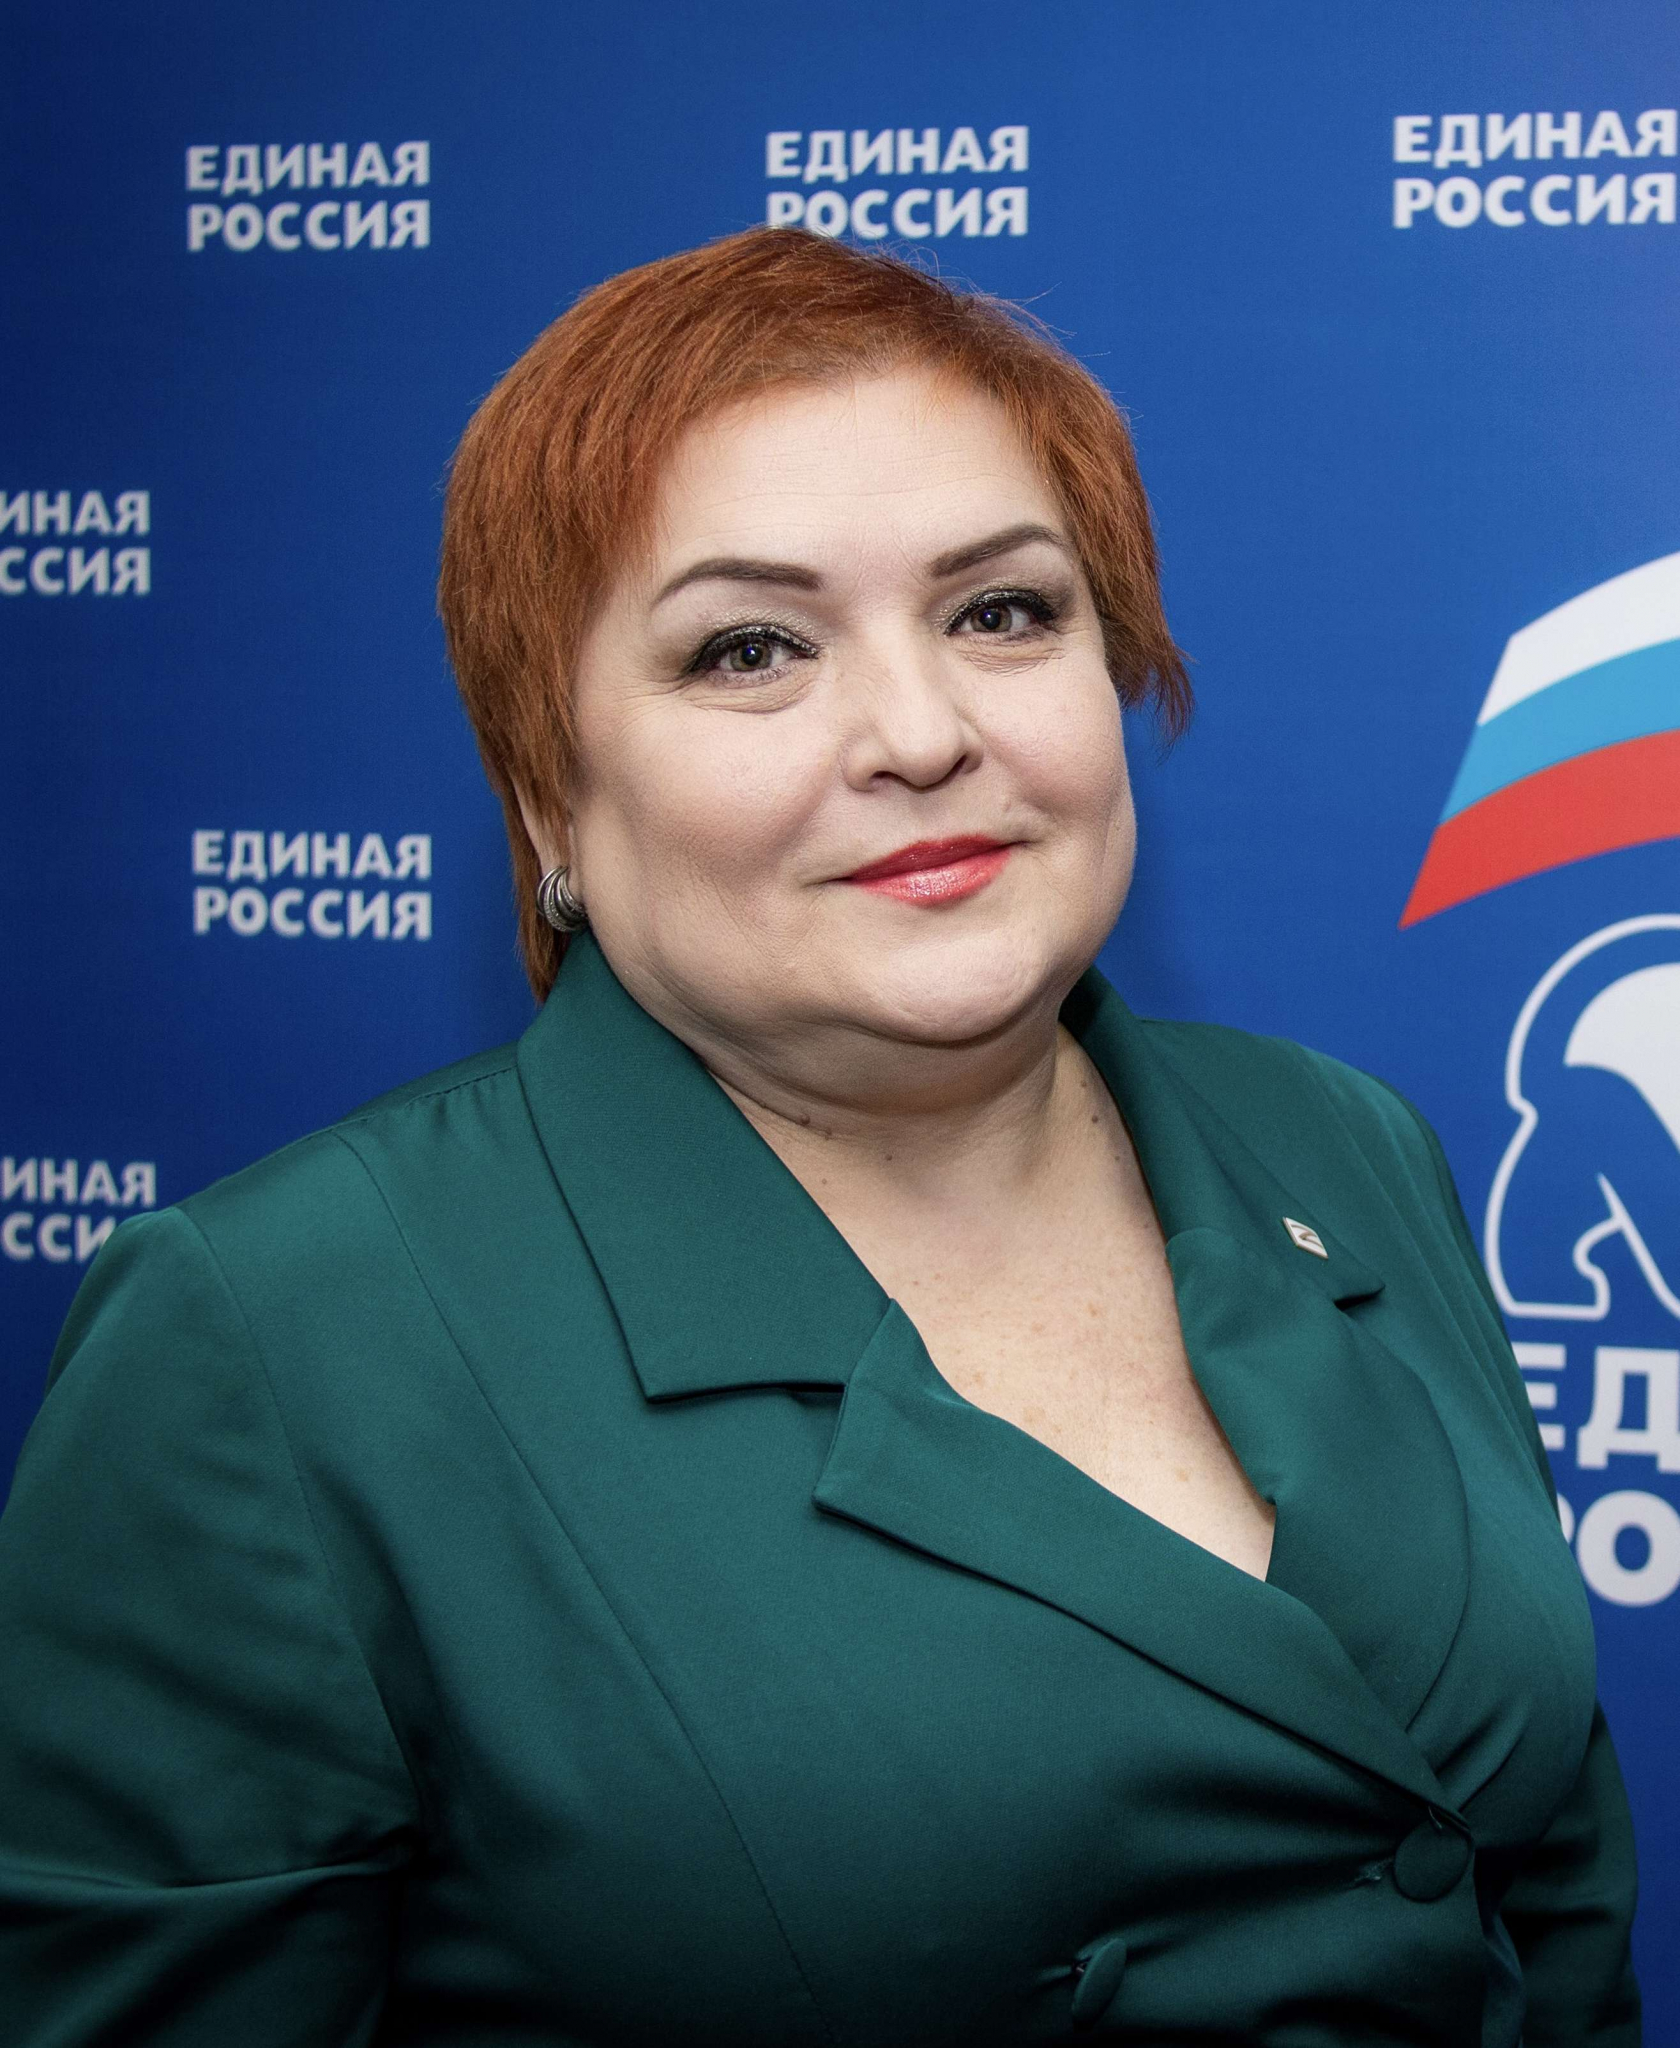 Бурцева Наталья Николаевна